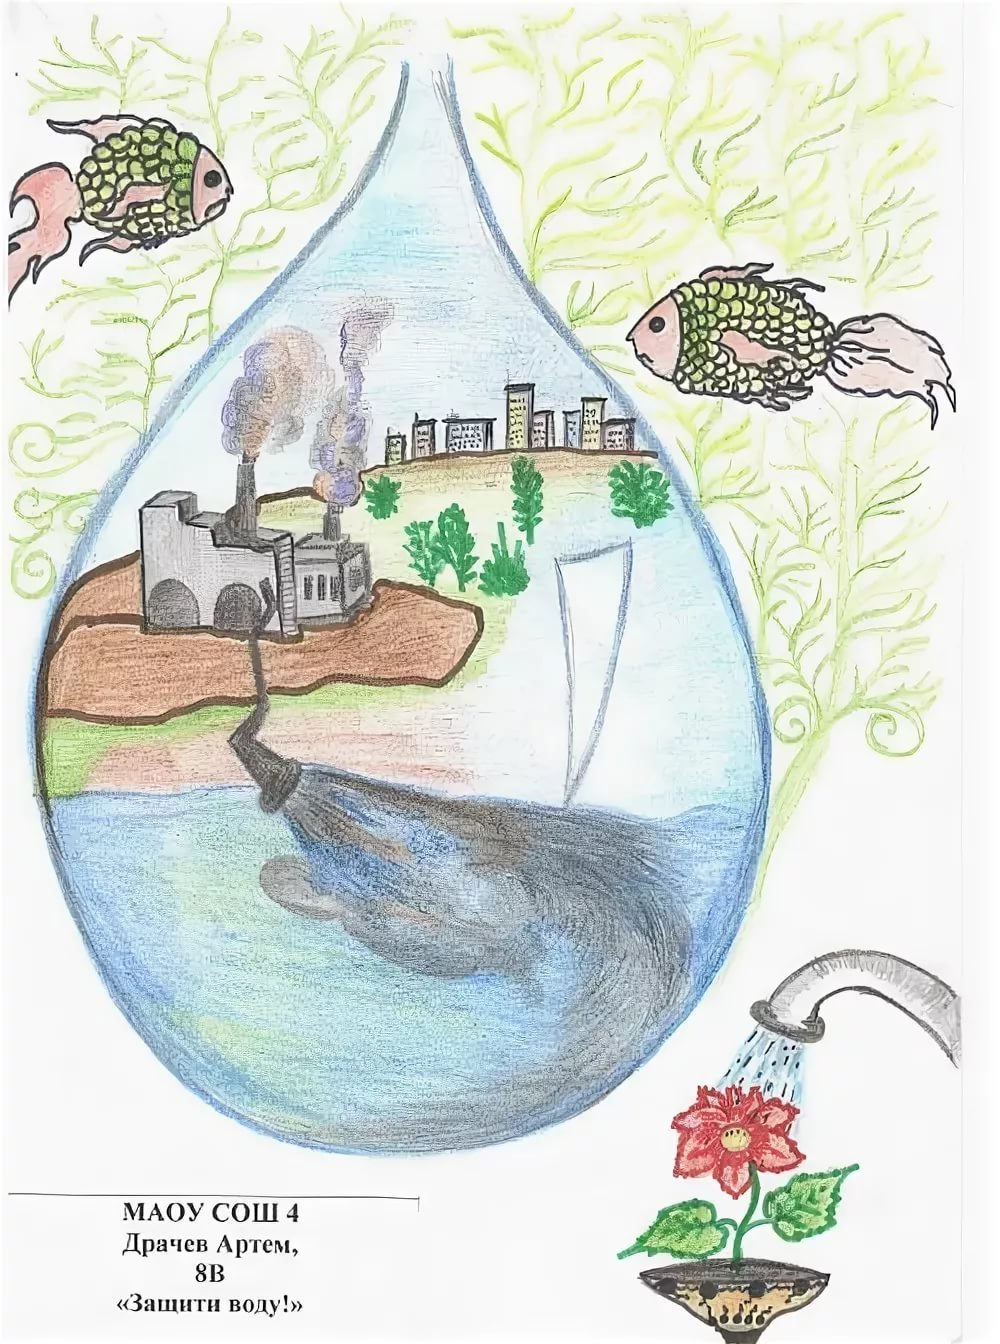 Рисунок мир воды и проблемы охраны